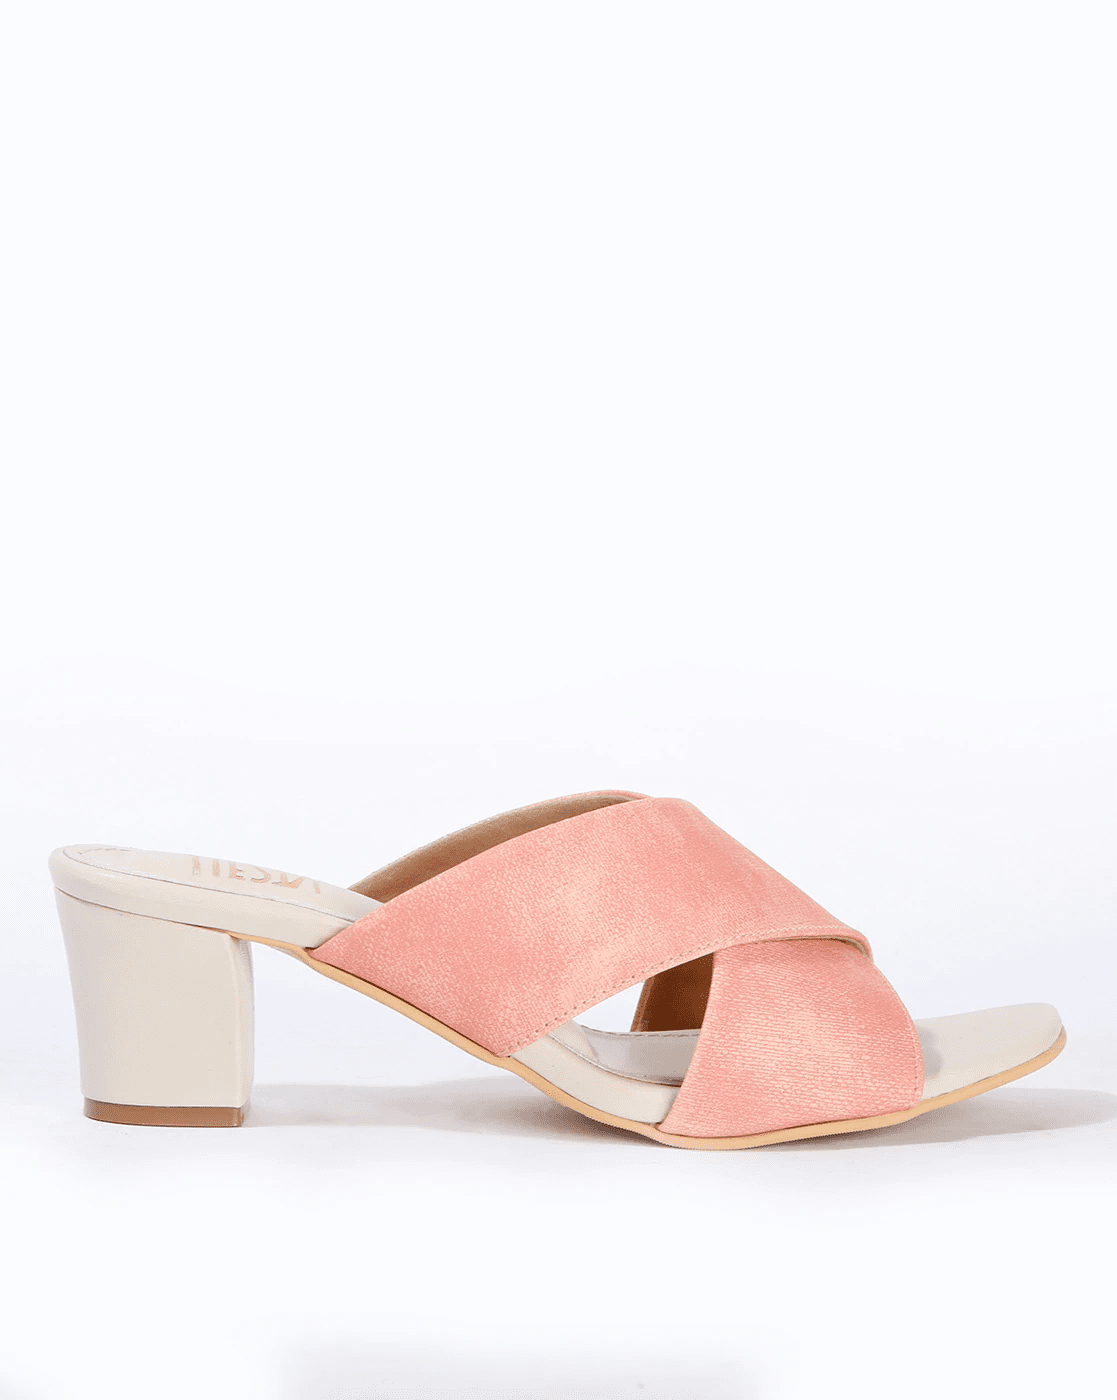 Buy Shoelab Women Pink Heels Online at Best Prices in India - JioMart.